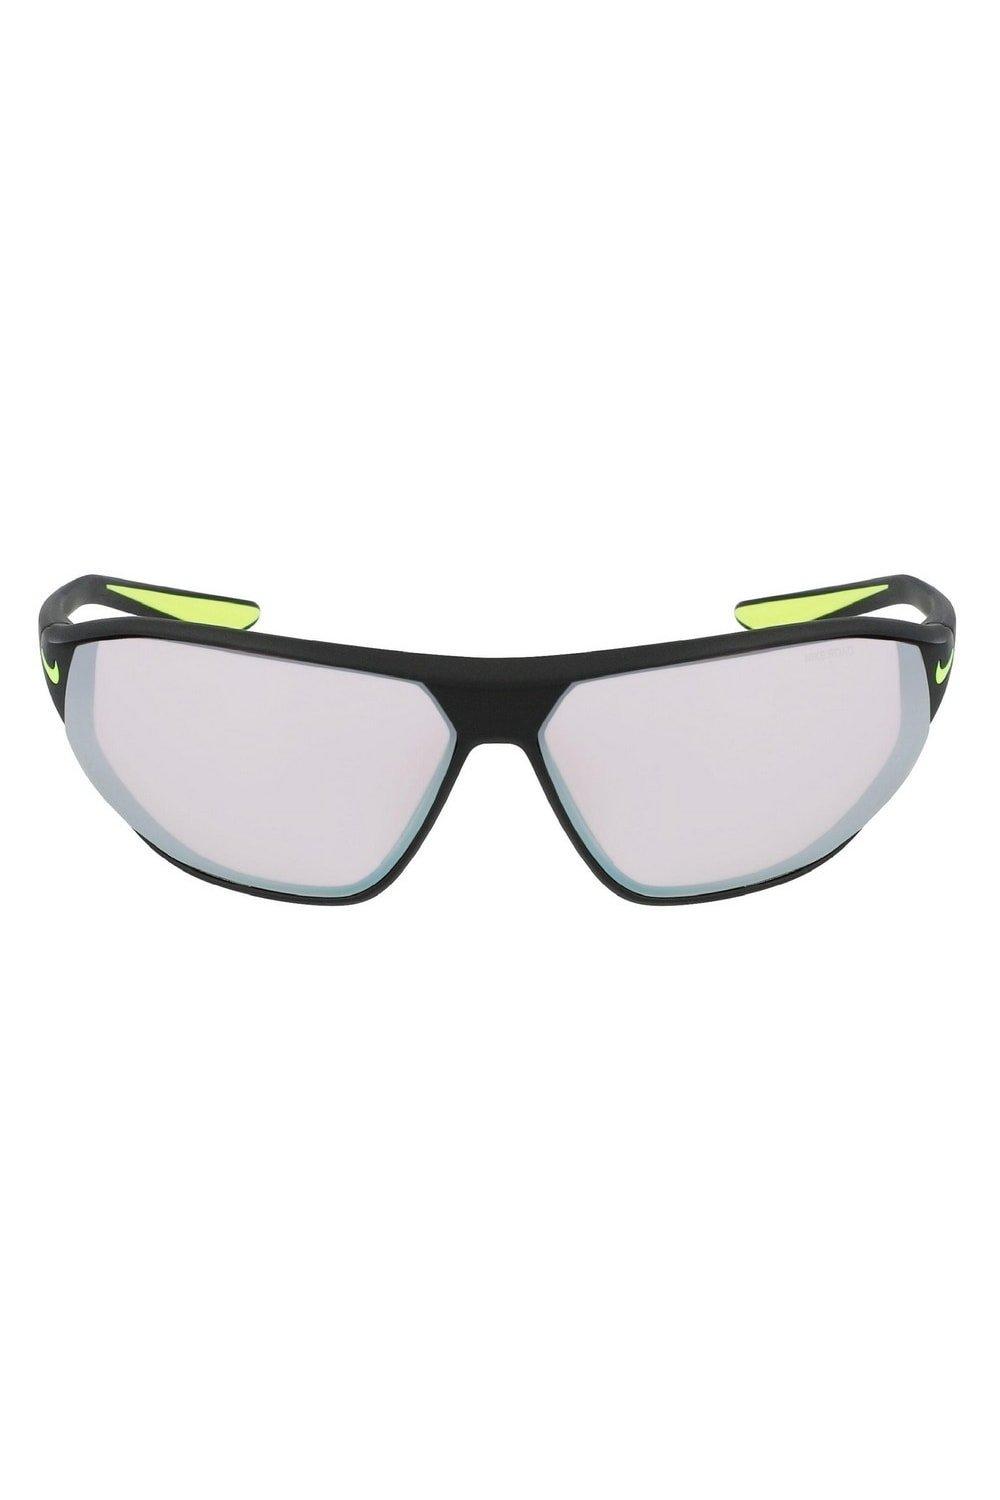 Солнцезащитные очки Aero Swift Nike, черный